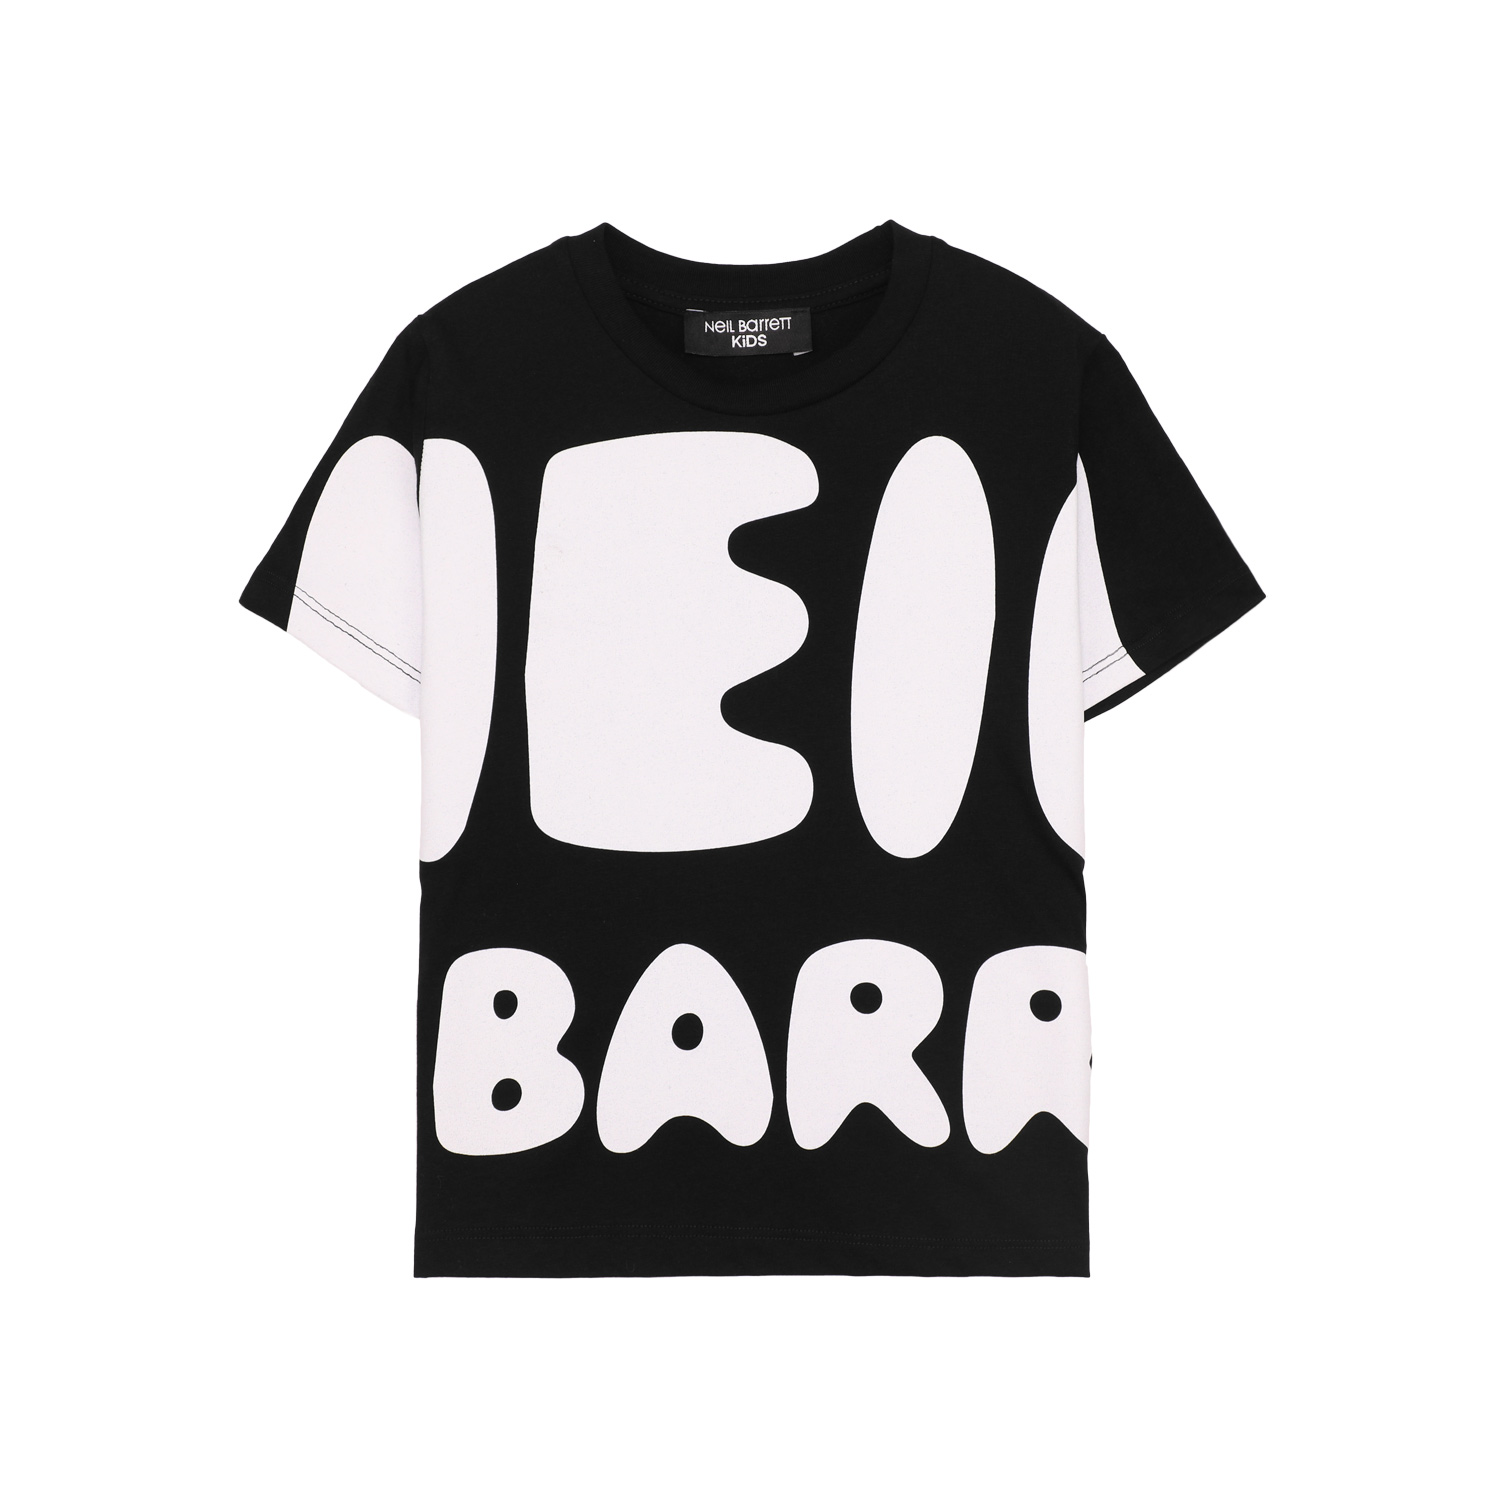 NEIL BARRETT print T-shirt black